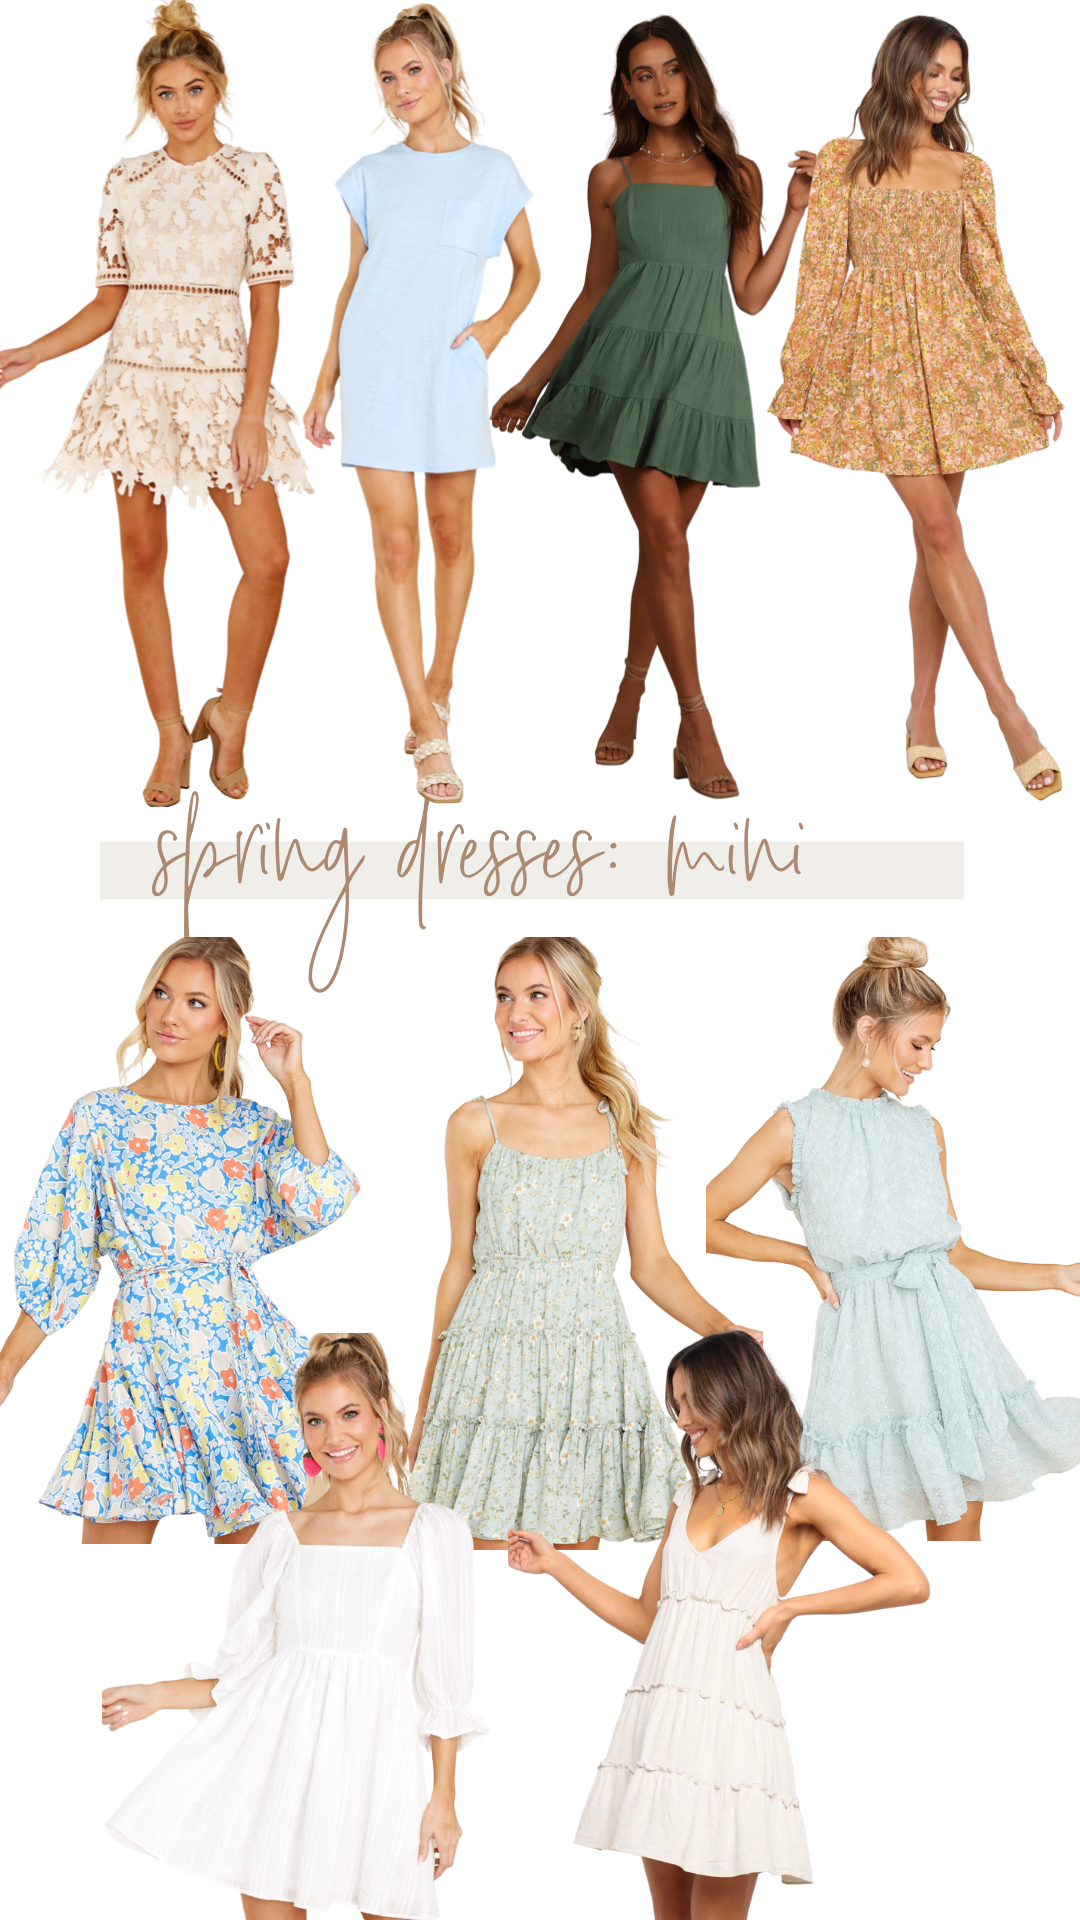 mini dresses for spring